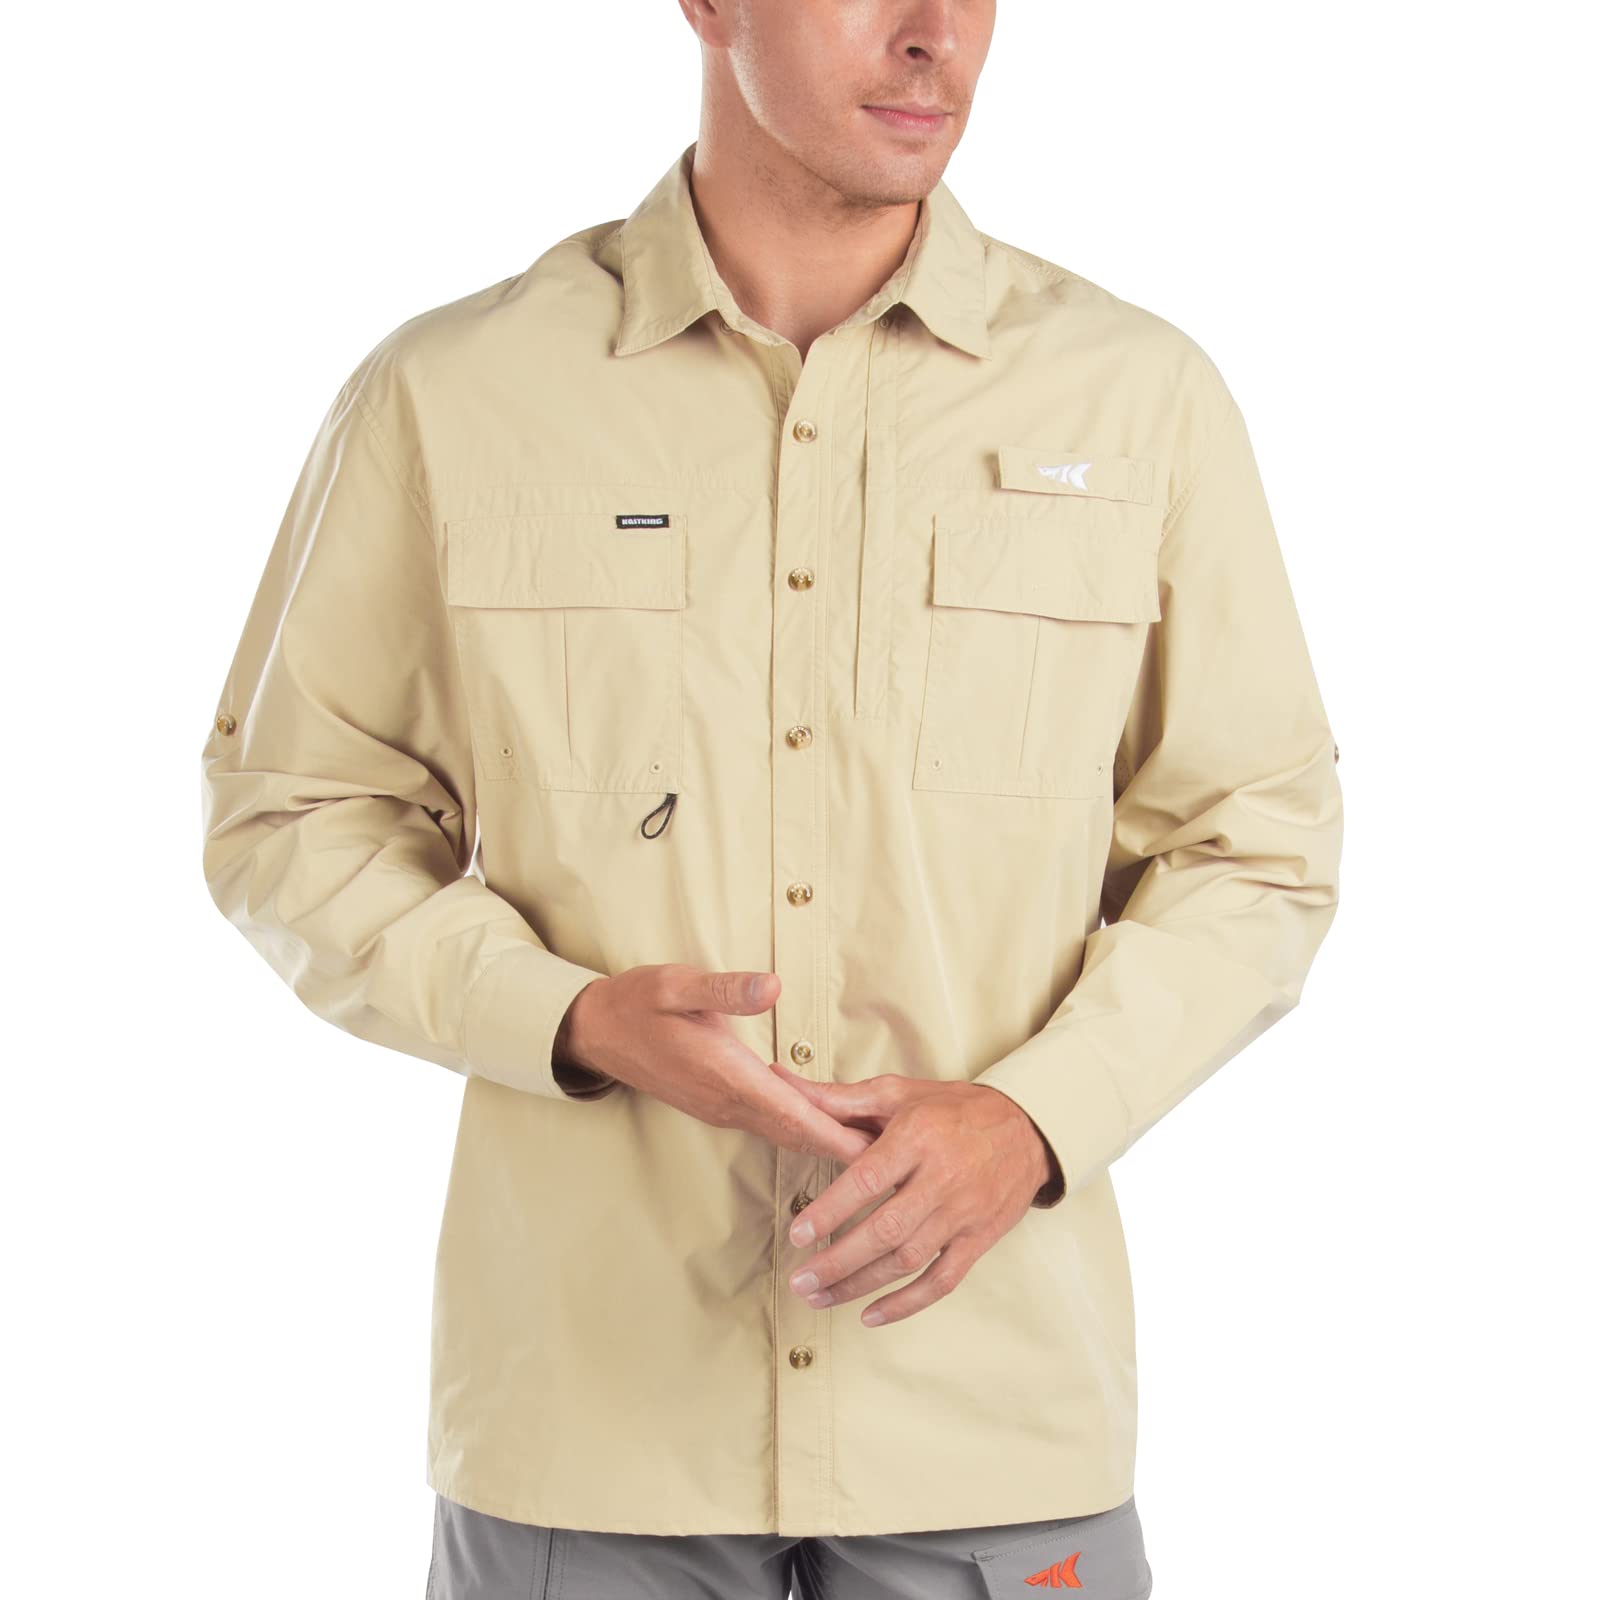 KastKing ReKon Men's Fishing Shirts, UPF 50+ Quick-Dry Short